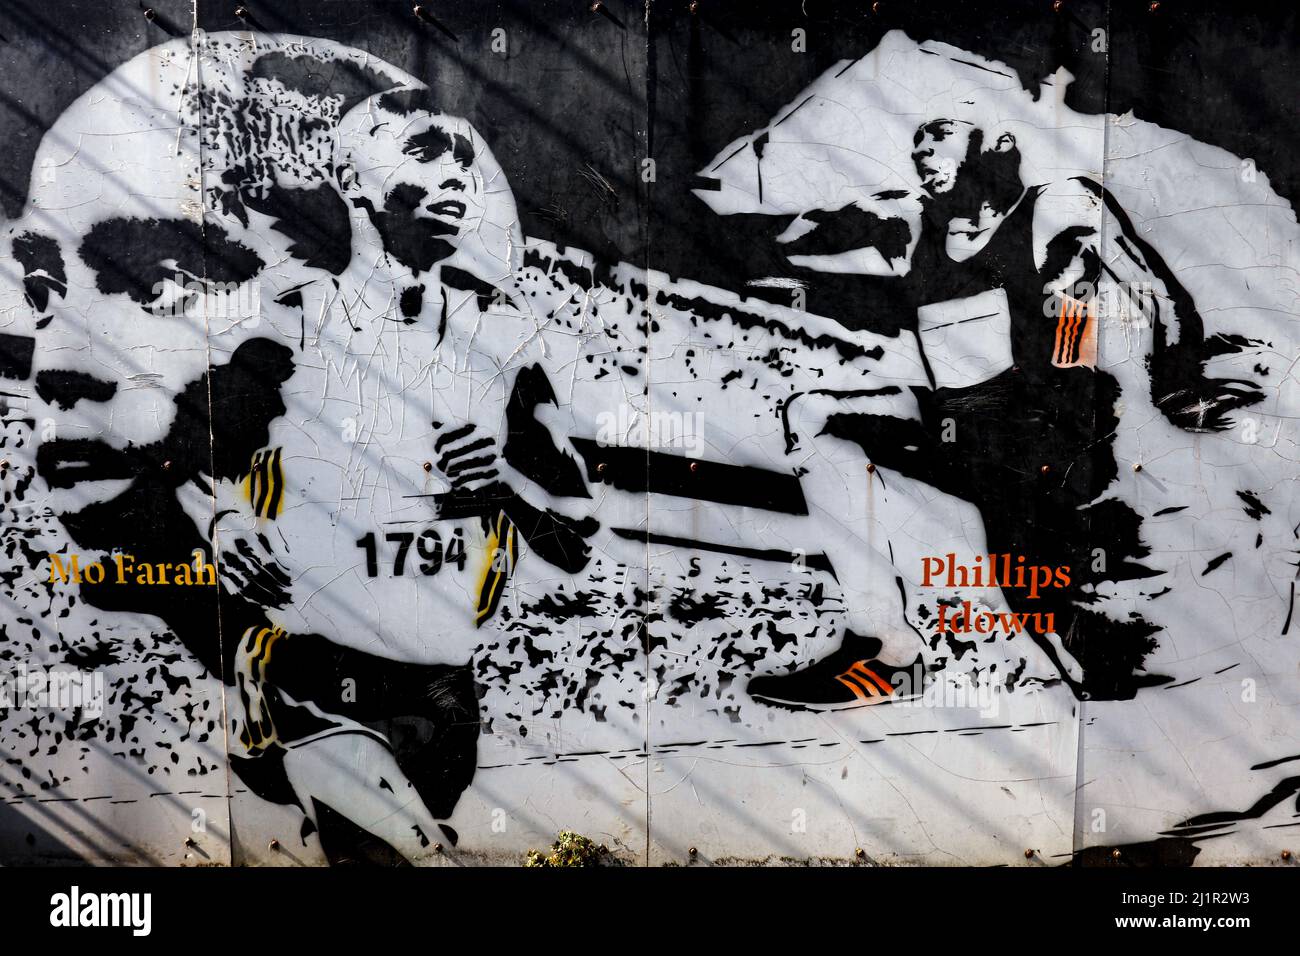 26th de marzo de 2022; Langthorne Park, Waltham Forest England; reflejo de los lugares utilizados para las Olimpiadas de Verano de 2012 en Londres; la apariencia descuidada de la Muralla de Adidas de Londres 2012 mostrando graffiti con Mo Farah y Phillips Idowu Foto de stock